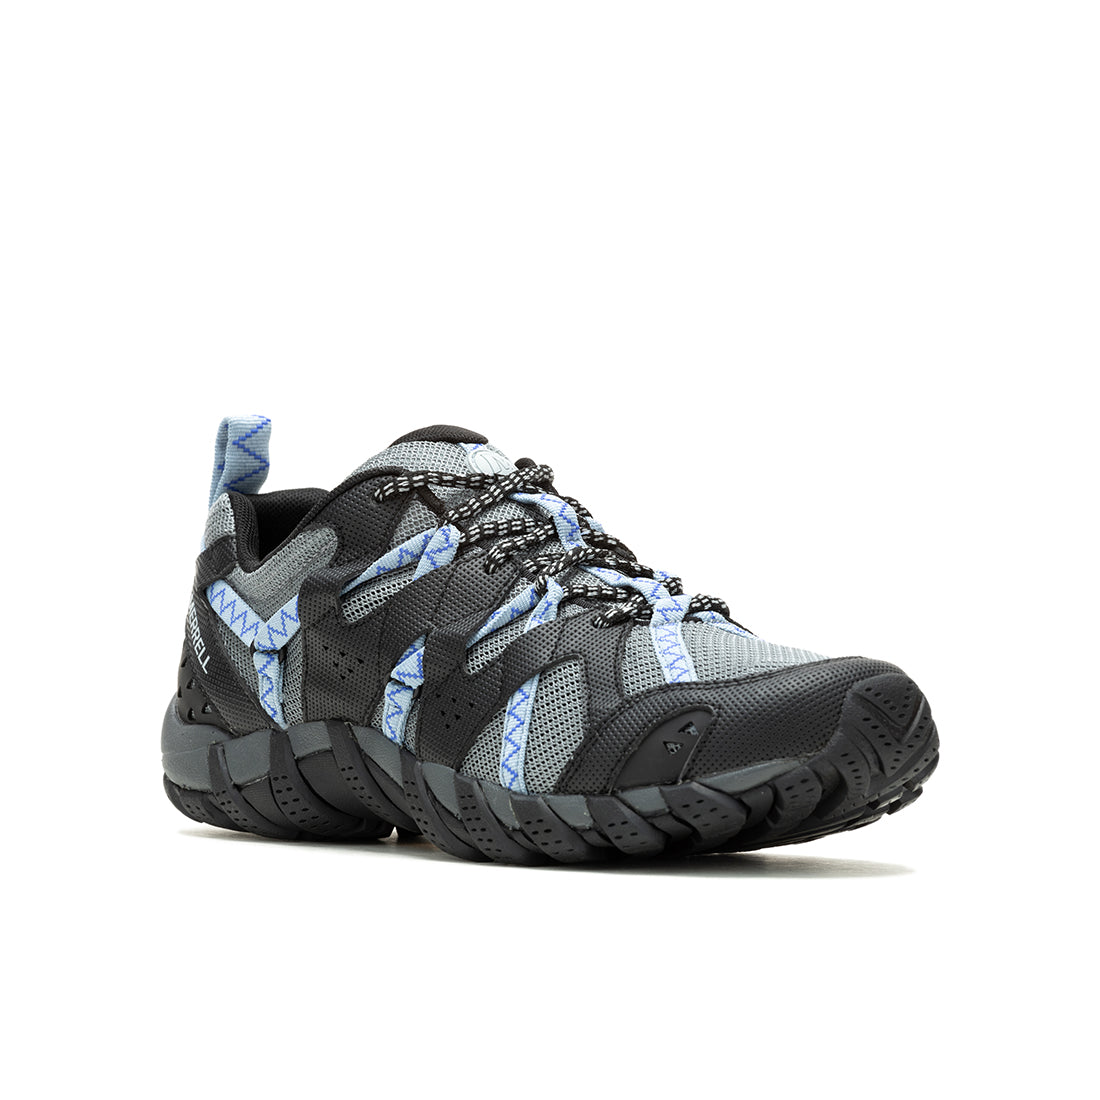 Waterpro Maipo 2 – Black/Chambray Womens Hydro Hiking Shoes